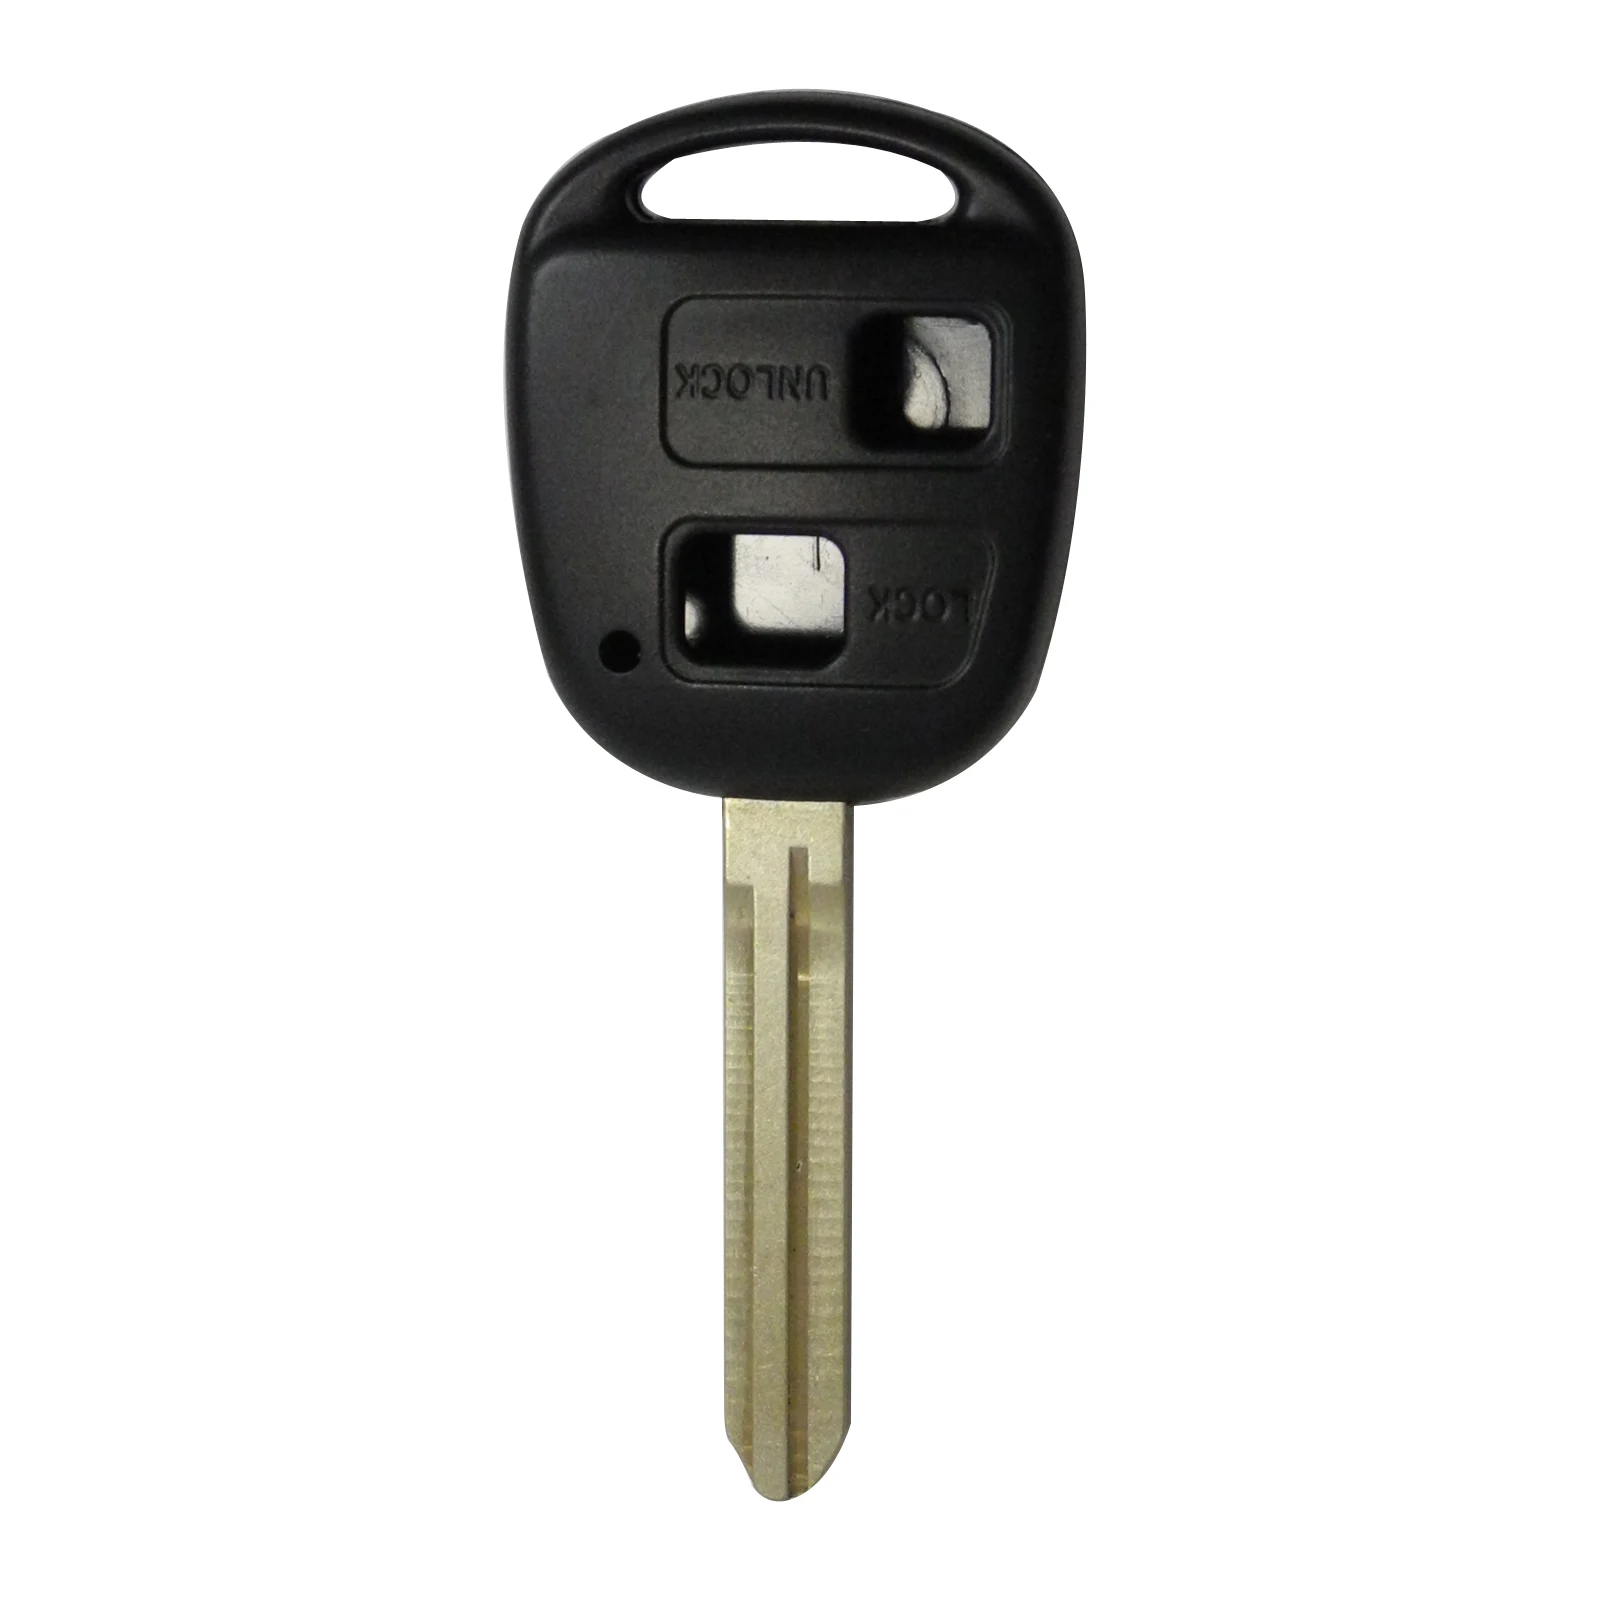 Jingyuqin 1 шт. 2 кнопки Uncut ЗАМЕНА дистанционного транспондера ключ зажигания Оболочка Чехол для Toyota Tacoma Toy43 лезвие без чипа